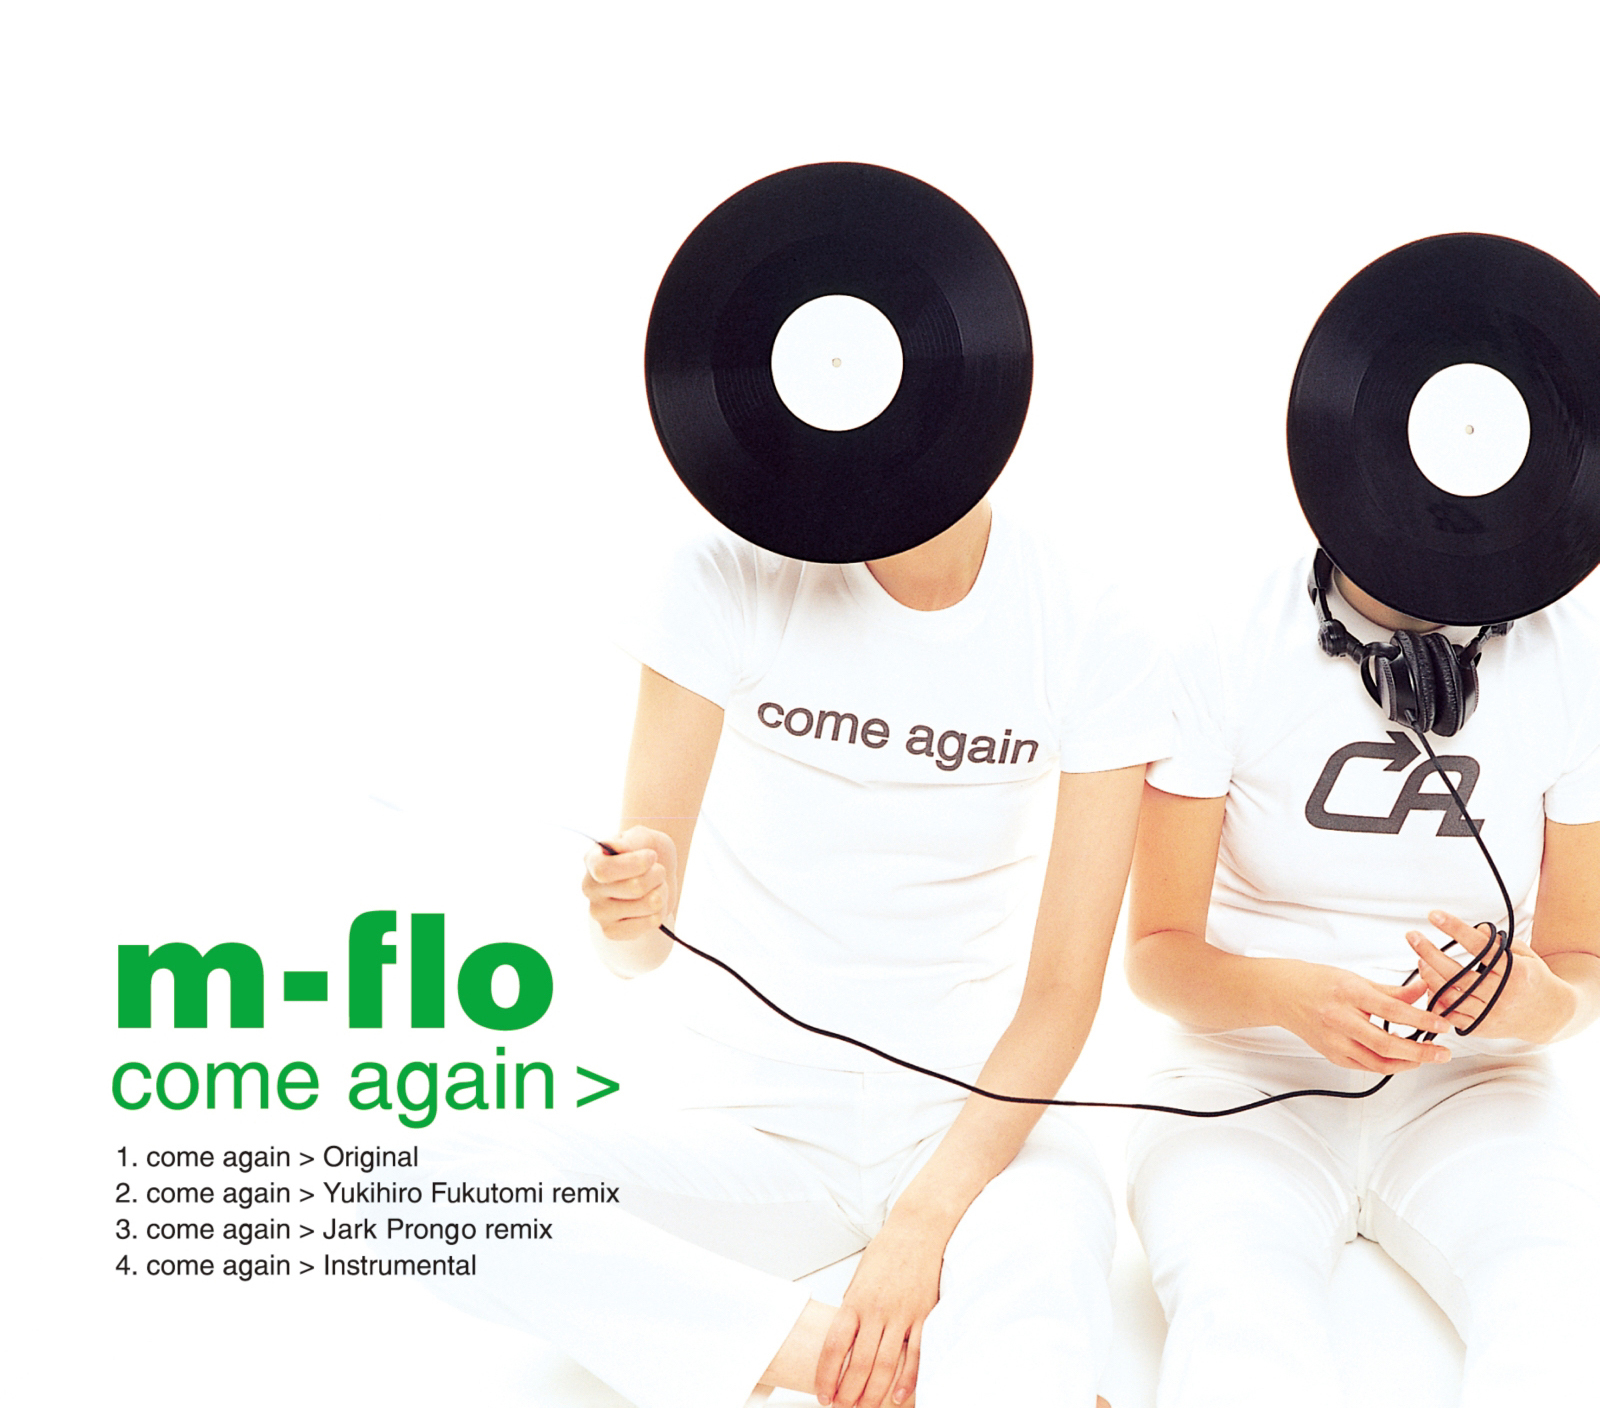 m-flo (エム-フロウ) 9thシングル『come again (カム・アゲイン)』(2001年1月17日発売) 高画質CDジャケット画像  (ジャケ写) | 高画質ジャケット画像.com